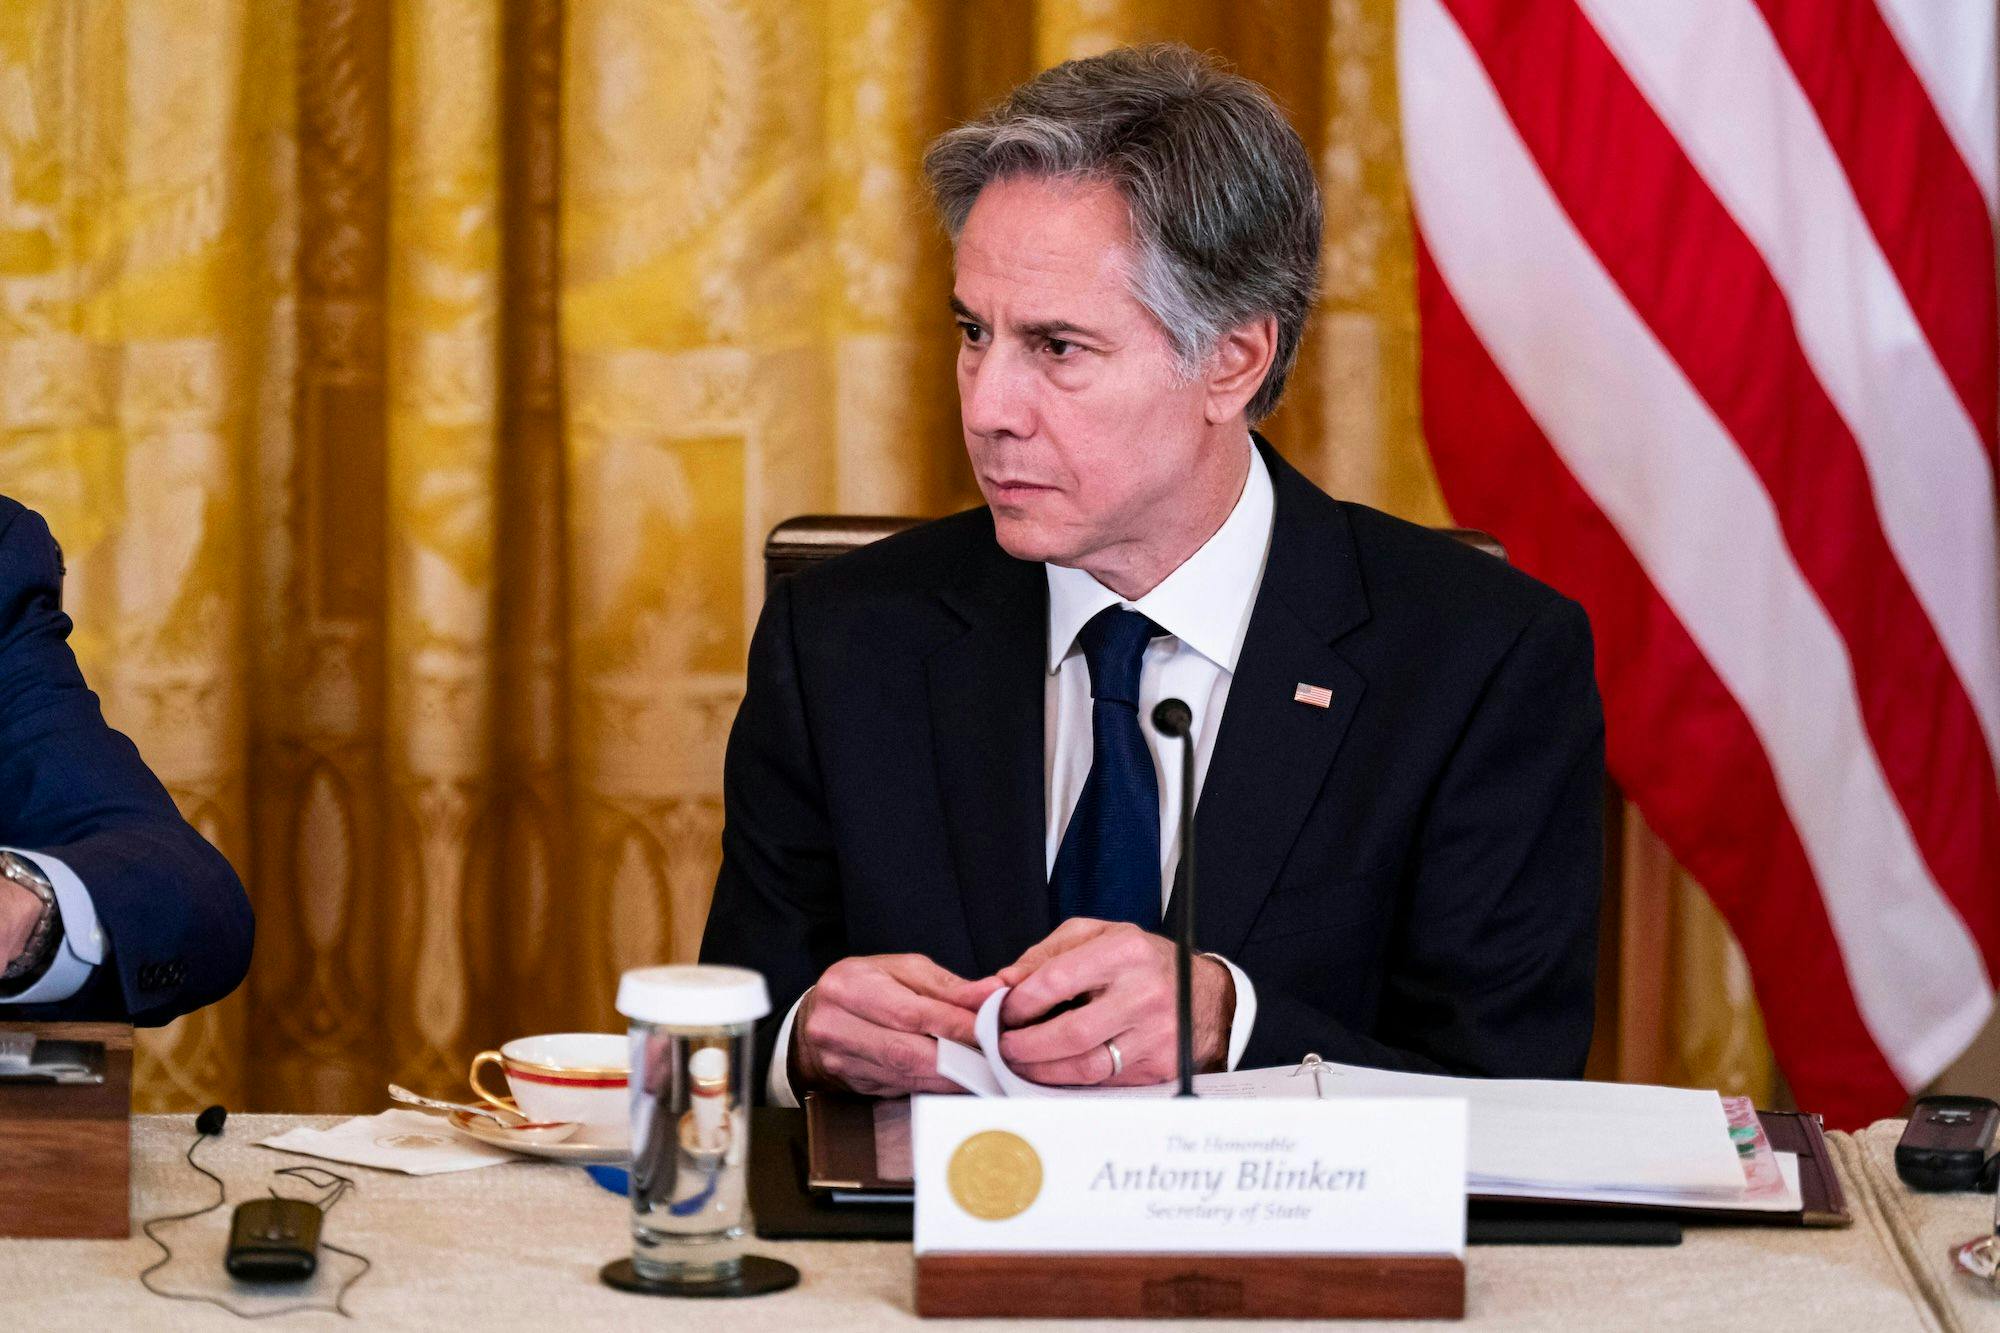 China USA, Politik, Zusammenarbeit, Krise, Kooperation, Wirtschaft, Sanktionen: Antony Blinken, Staatssekretär der USA, während eines Meetings